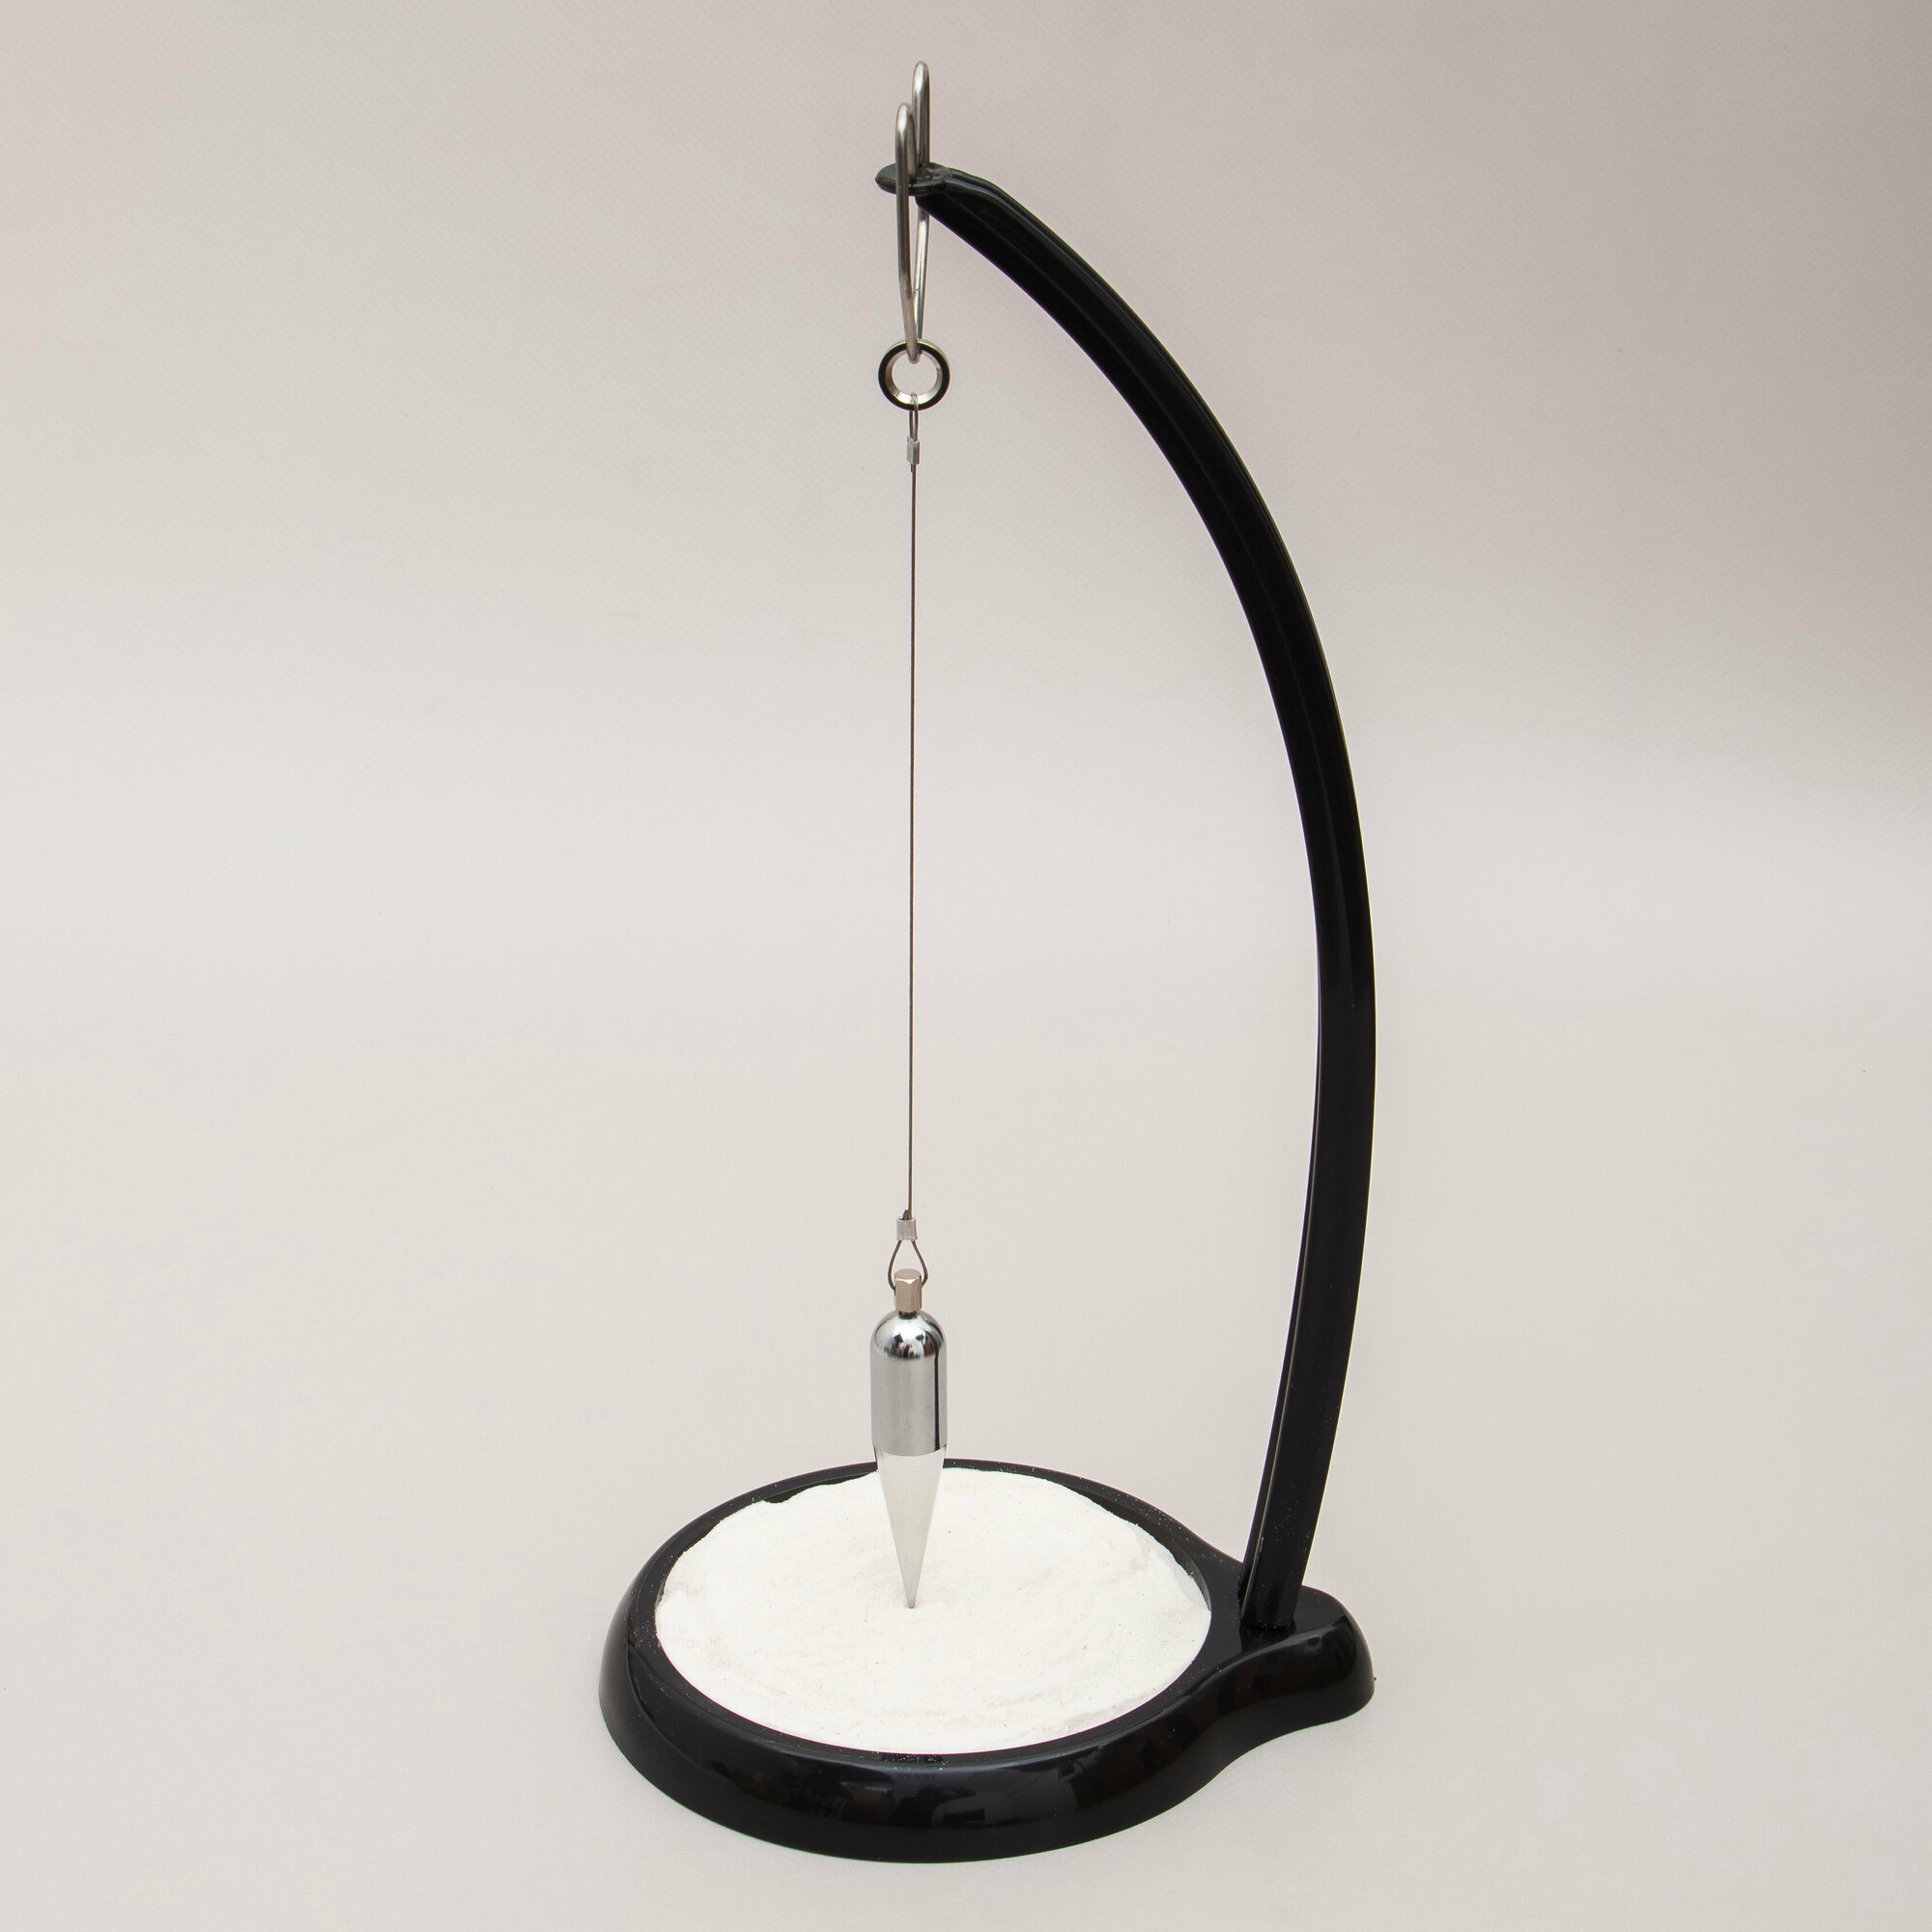 Настольный песочный маятник Фуко Кристалл антистресс Эврика, математический, сувенир, подарок на 23 февраля